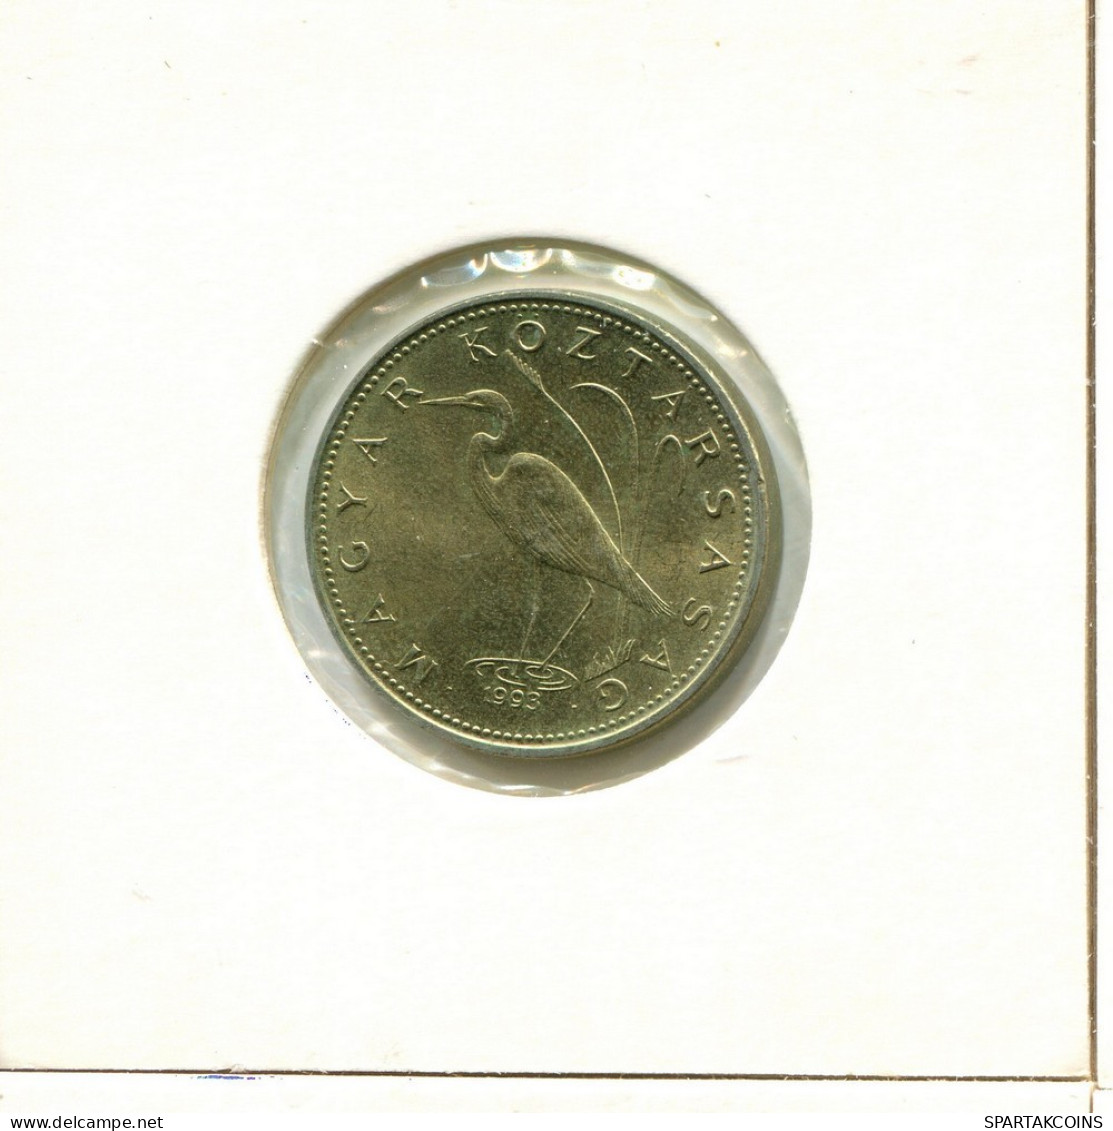 5 FORINT 1993 HUNGRÍA HUNGARY Moneda #AY512.E.A - Hungría